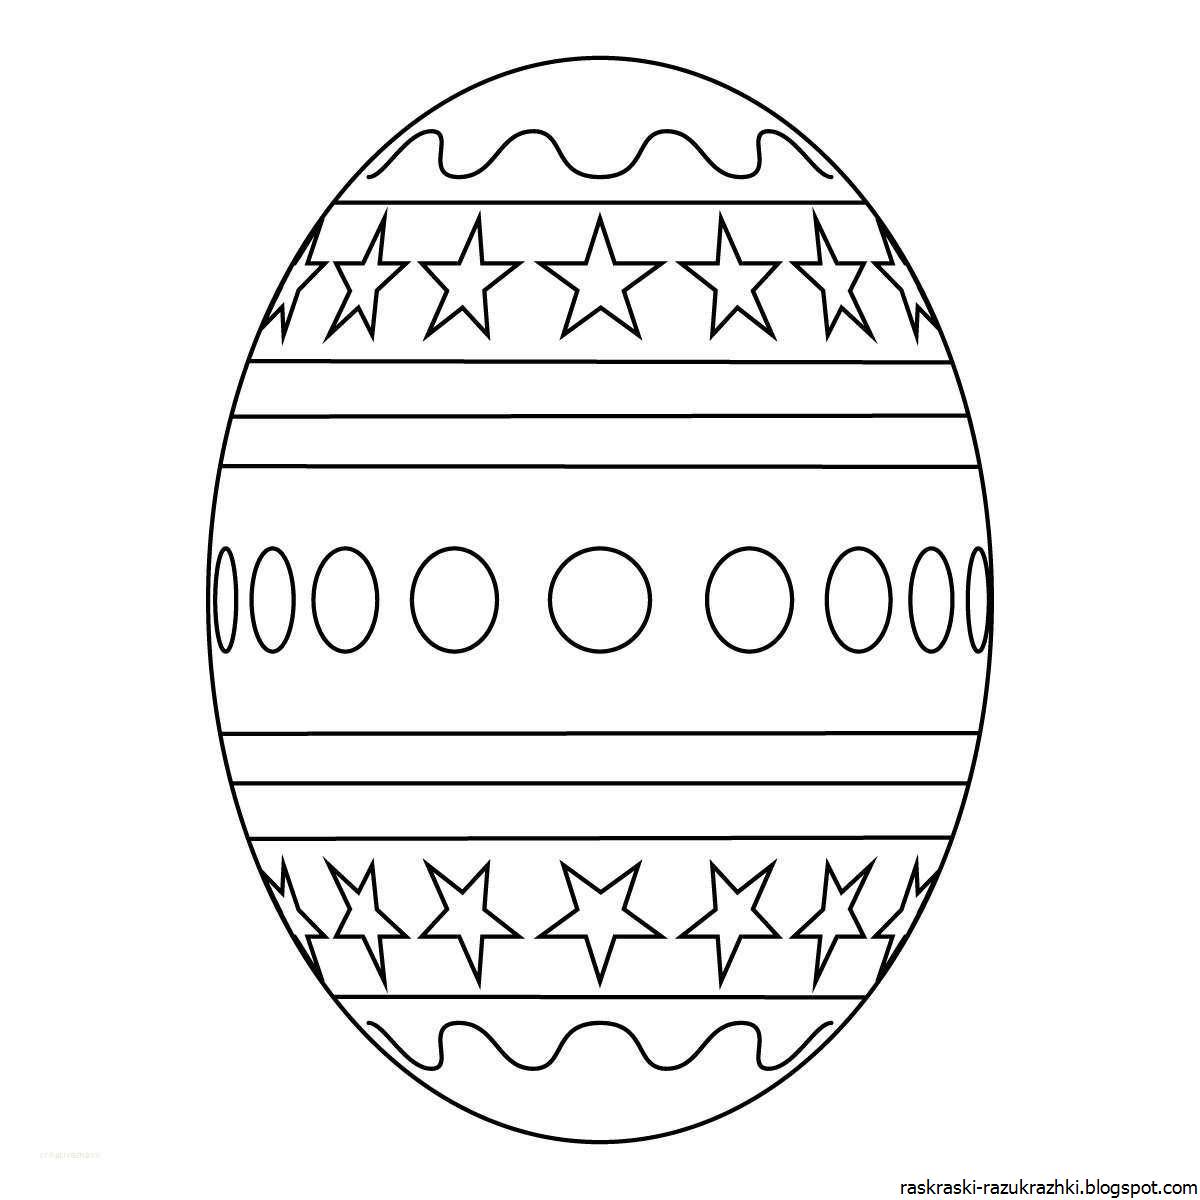 Великолепная раскраска яйцо